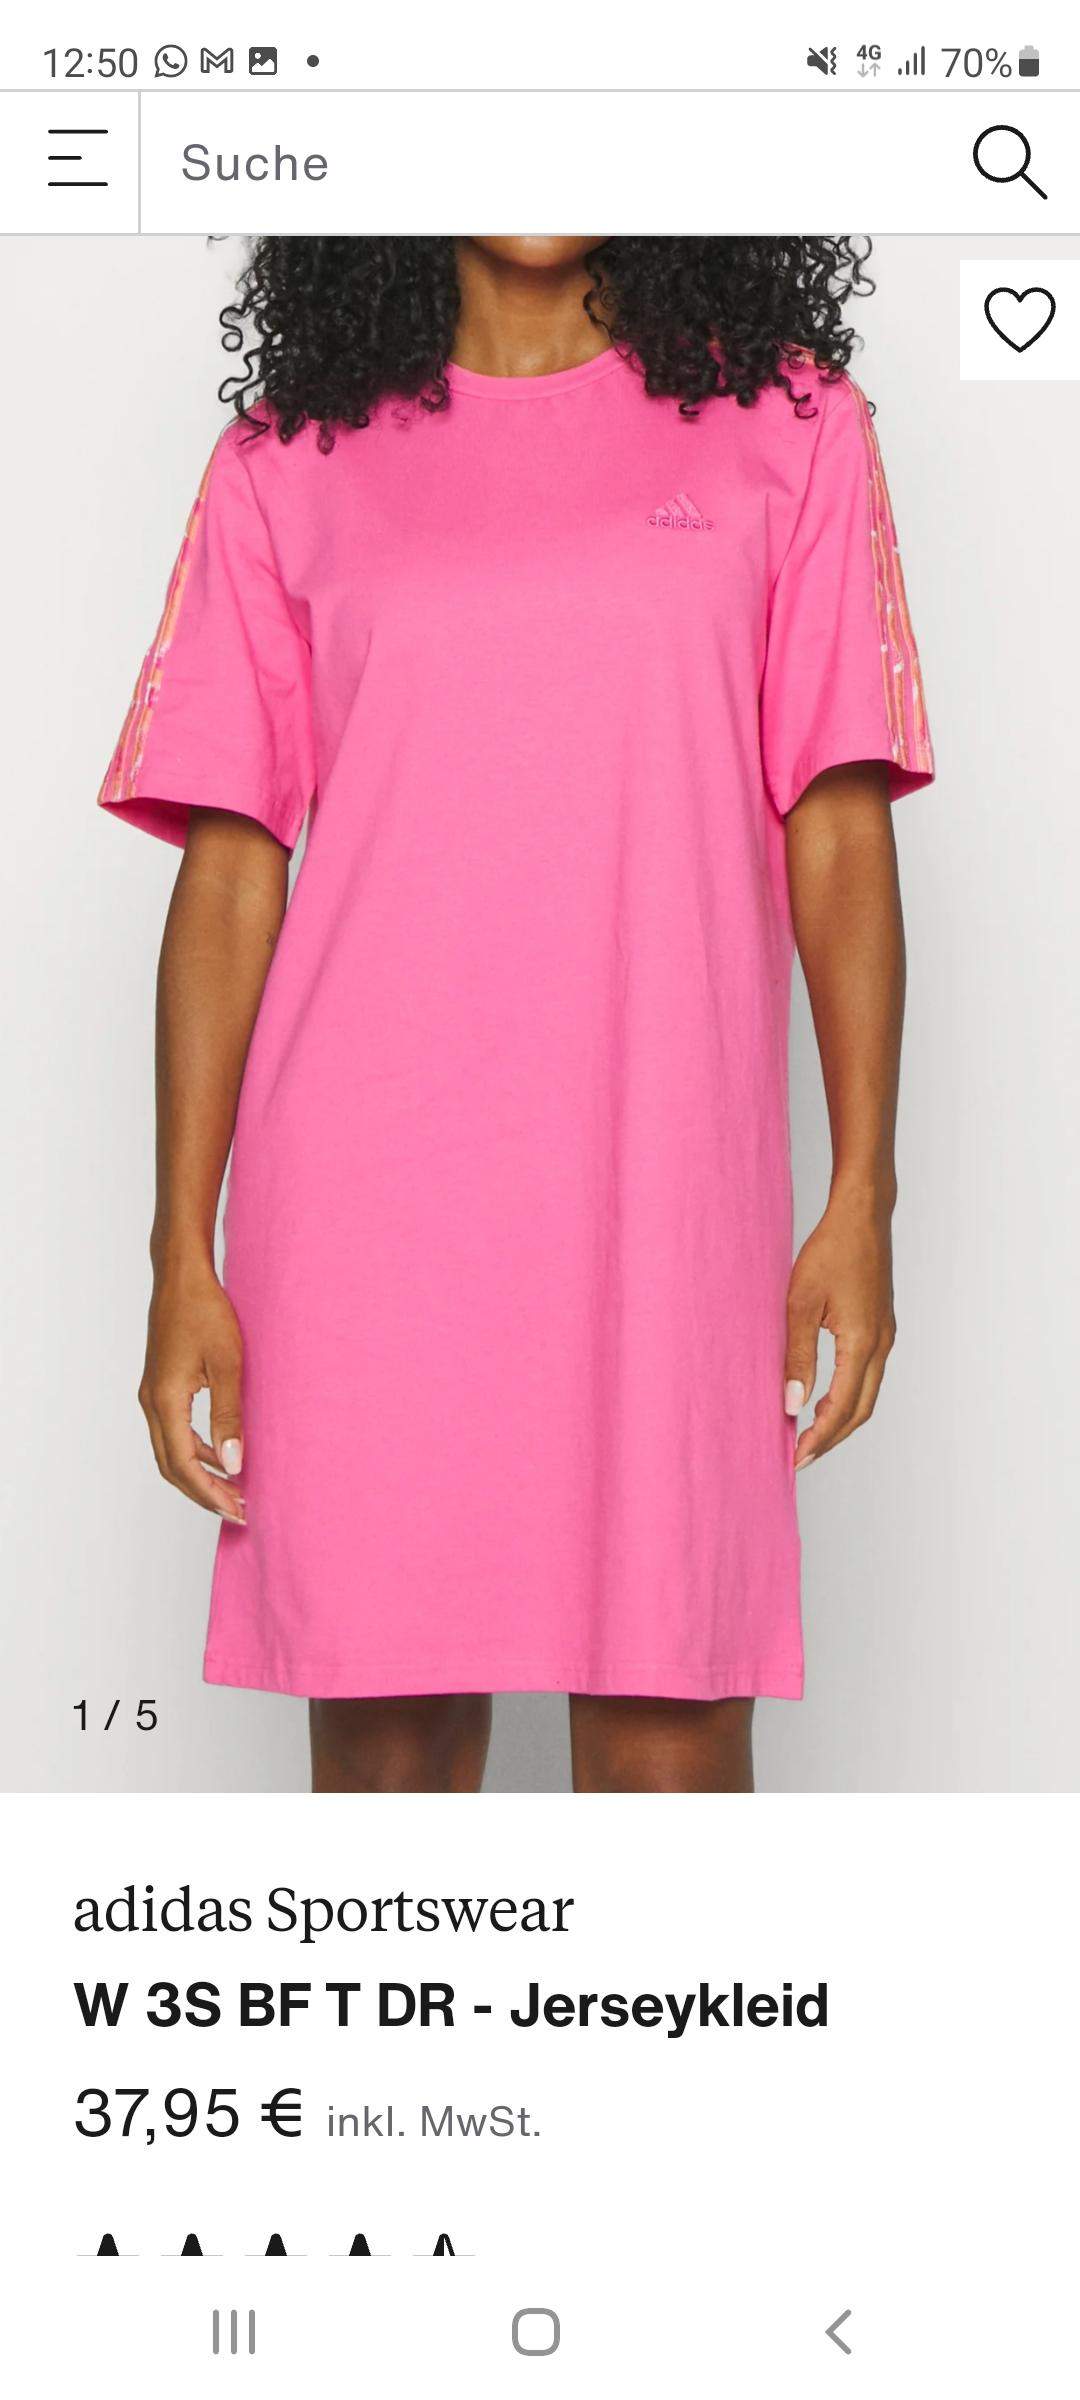 Findet ihr, dass ich dieses pinke Adidas Kleid kaufen sollte? (Kleidung)